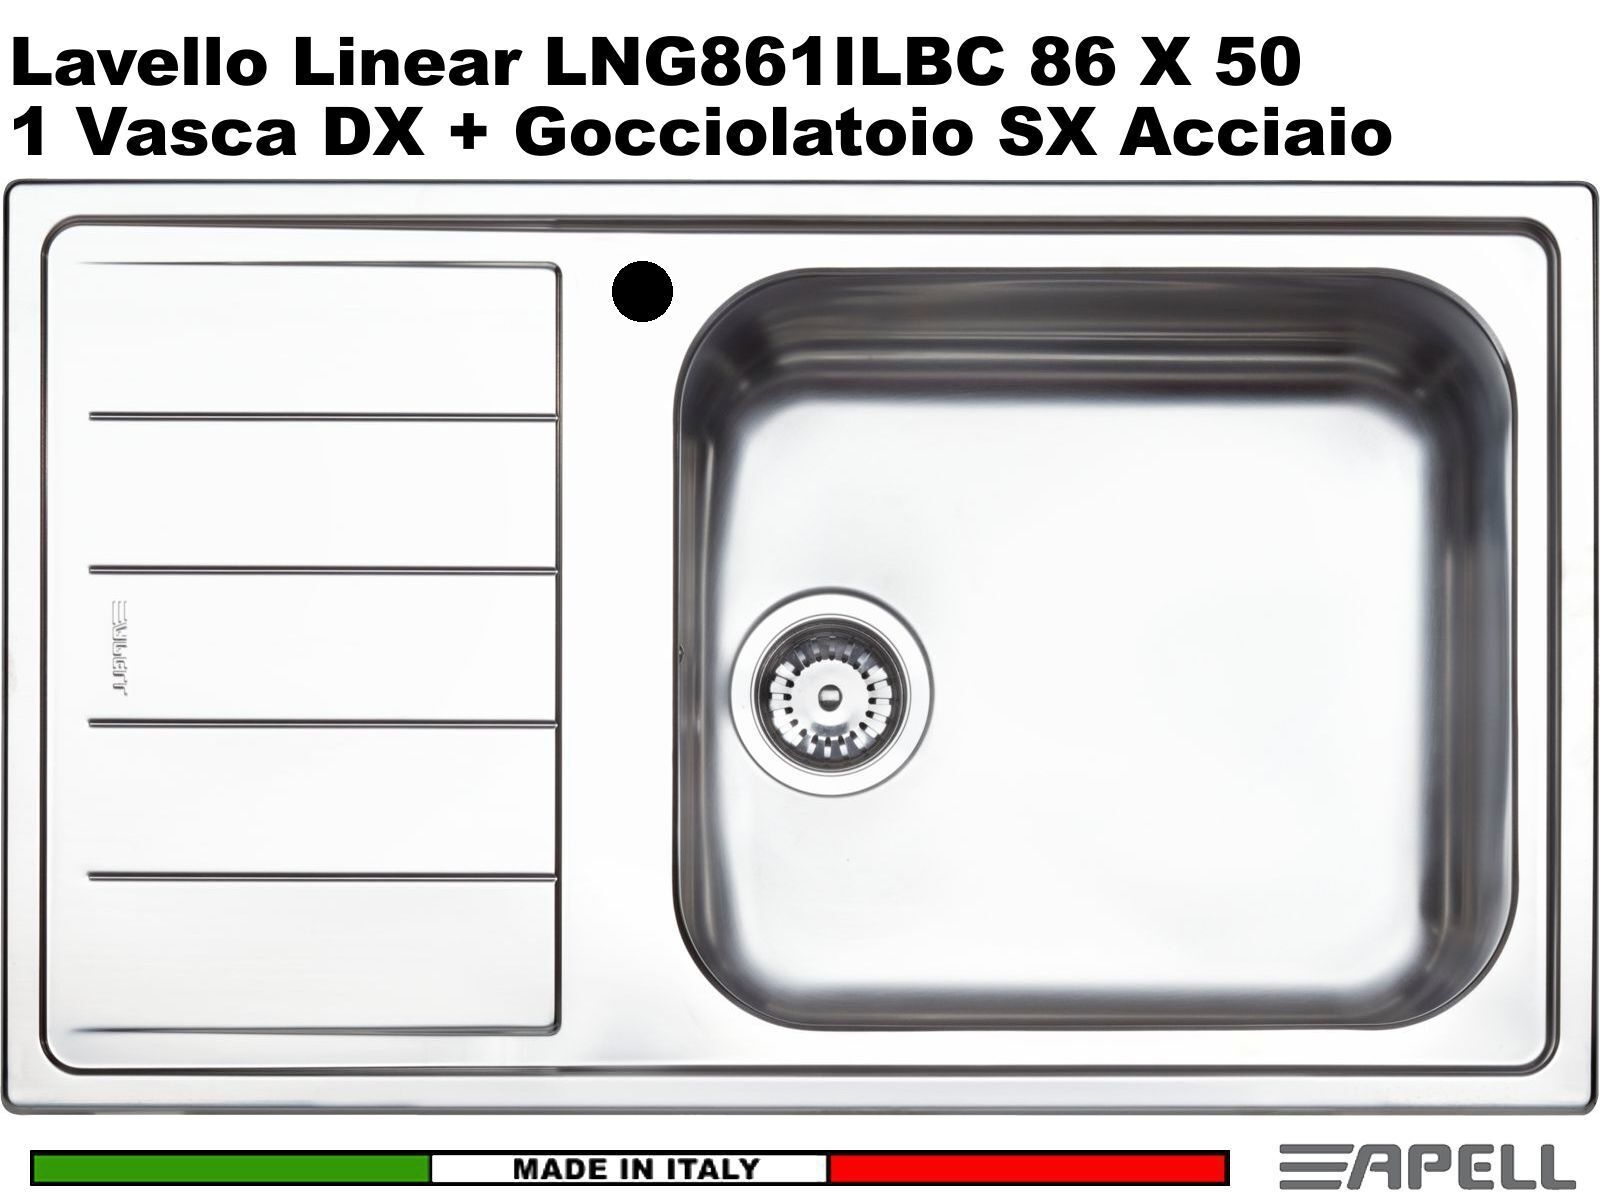 Apell Lng861ilbc Serie Linear Lavello Da Incasso 1 Vasca Maxi Gocciolatoio Sinis